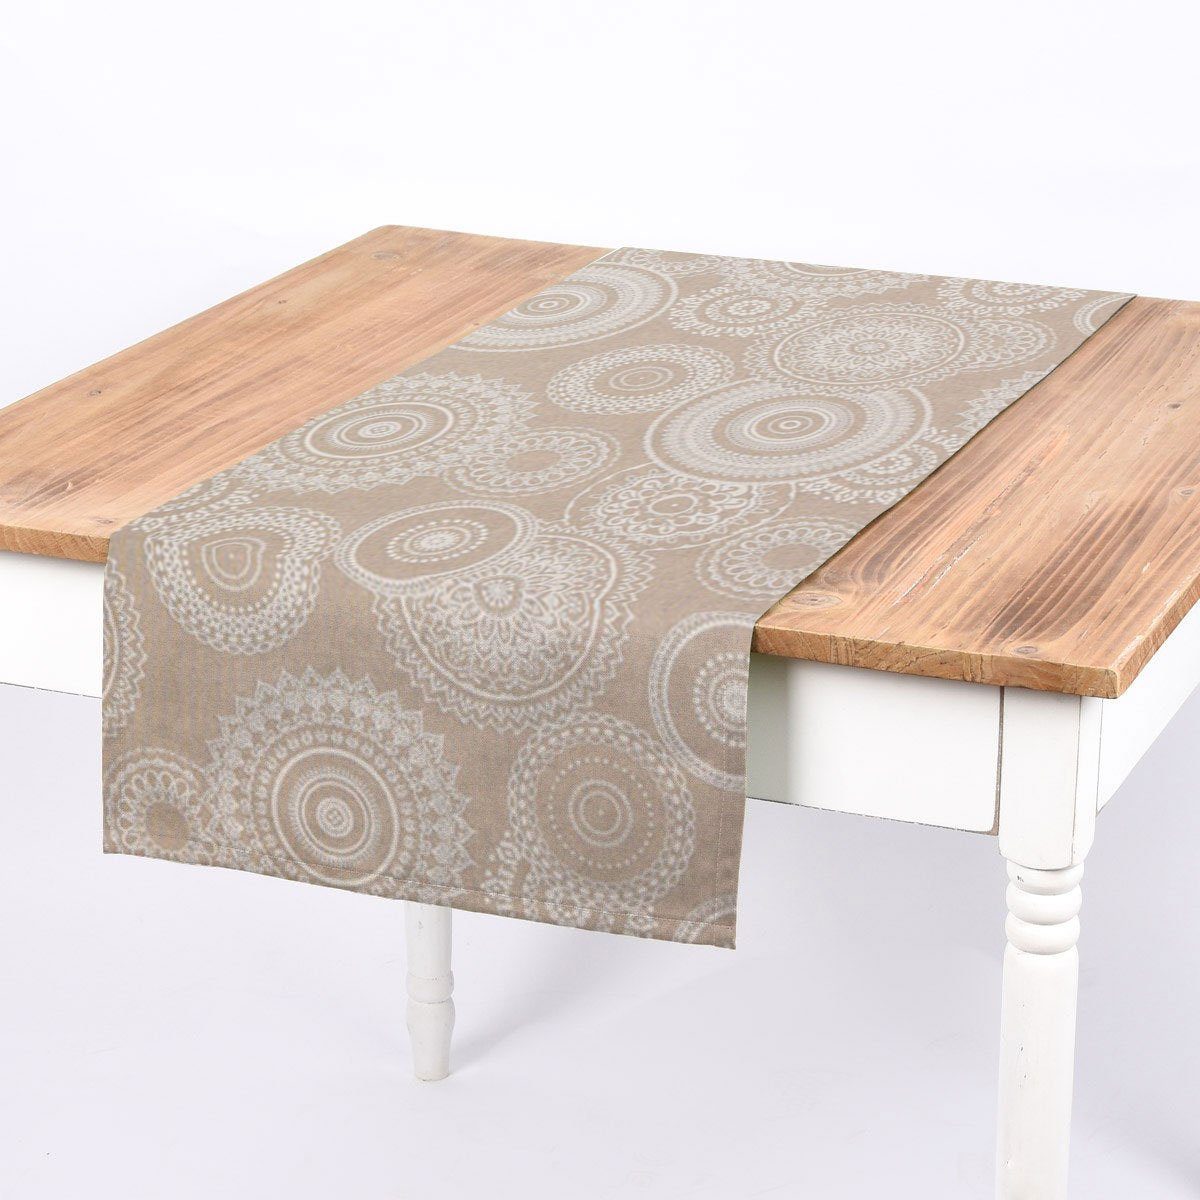 SCHÖNER LEBEN. Tischläufer SCHÖNER LEBEN. Tischläufer Kreise Ornamente natur weiß 40x160cm, handmade